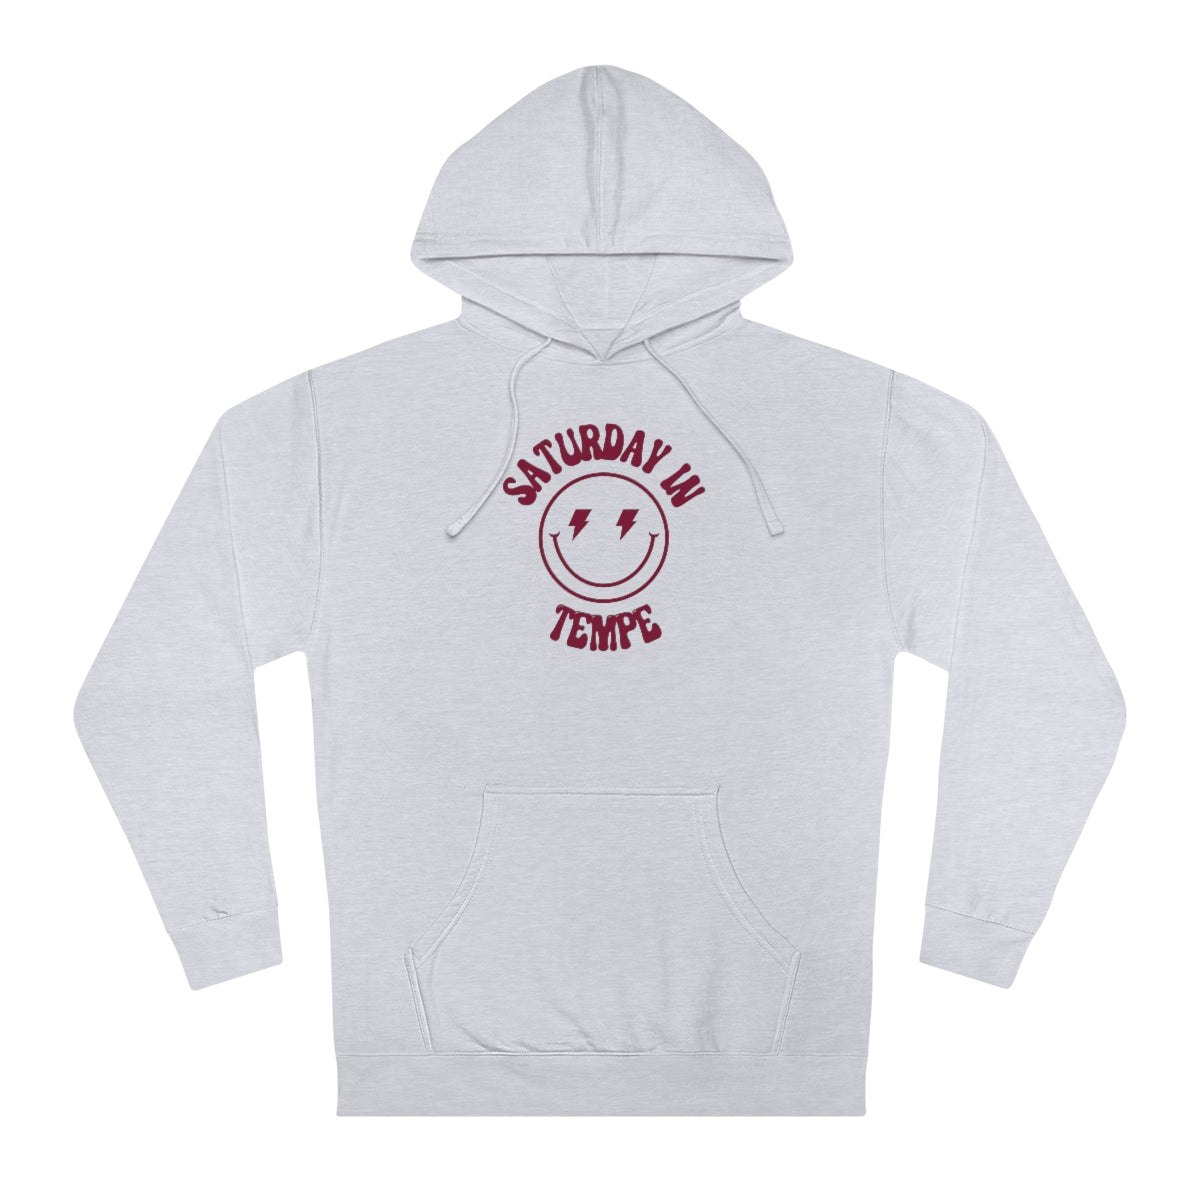 Smiley Tempe Hooded Sweatshirt - GG - ITC